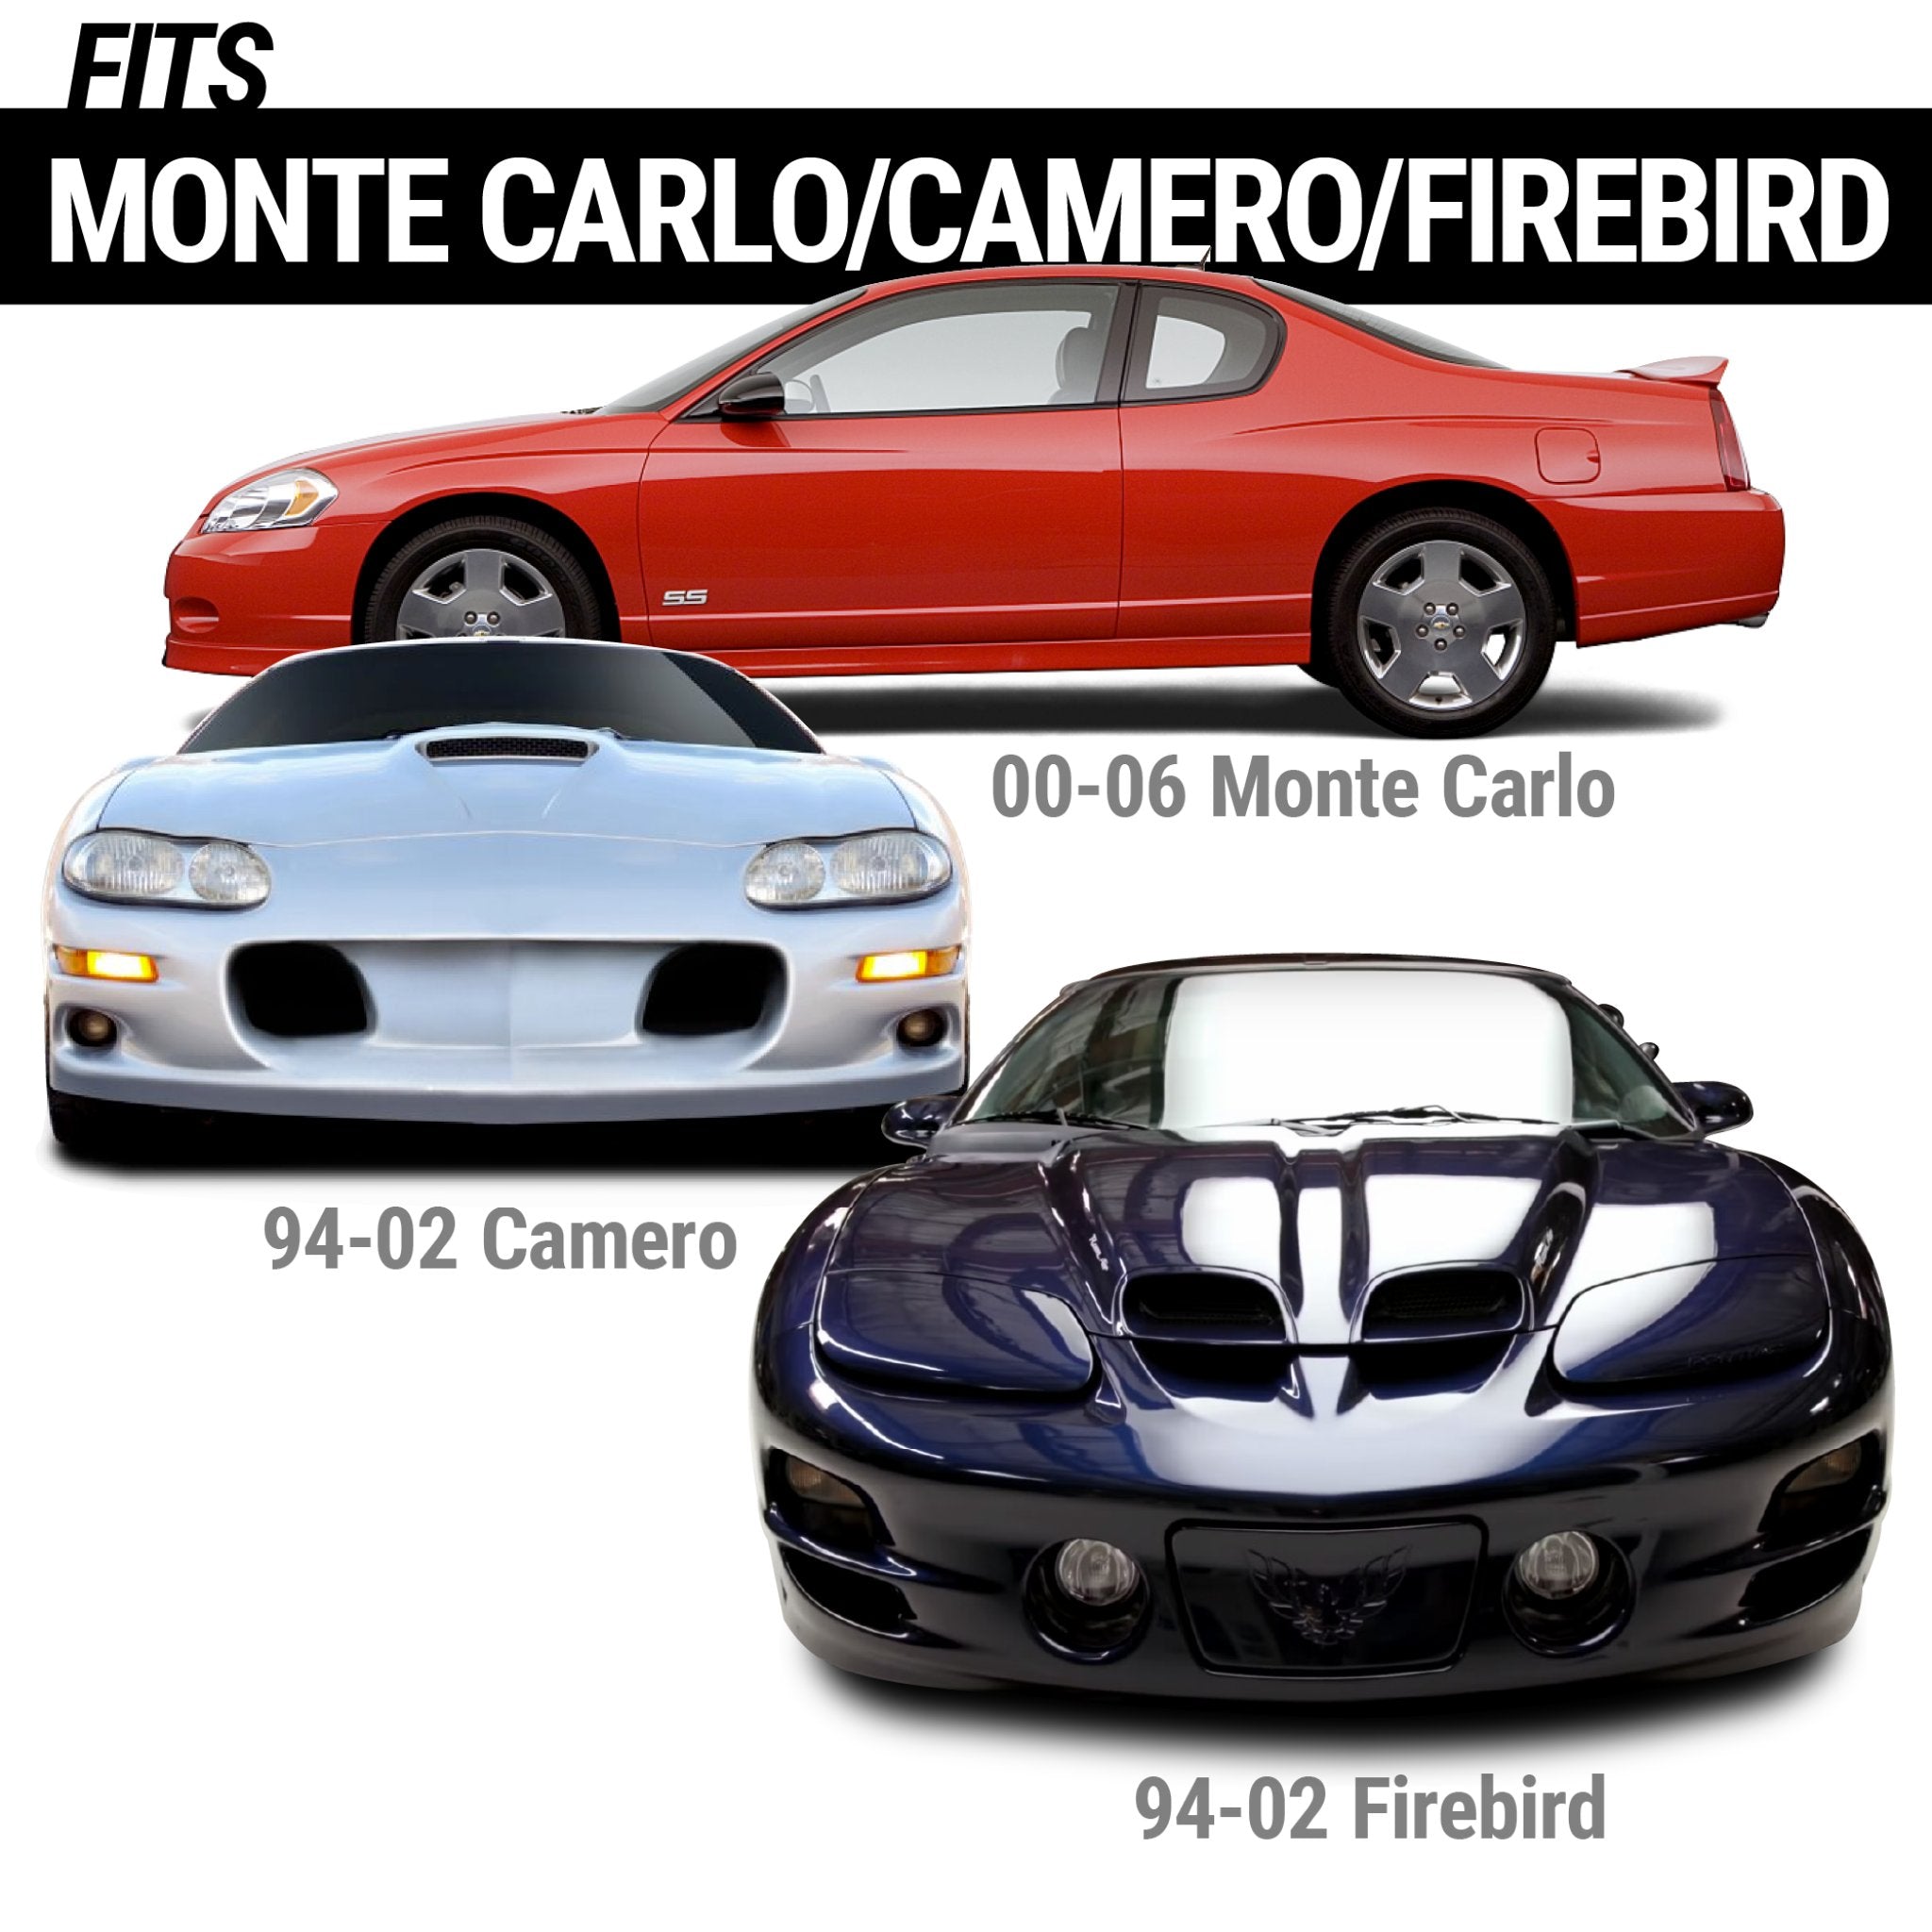 Kit de puerta de afeitar atornillada para actuadores Camaro/Firebird 94-02 Monte Carlo HD 00-06